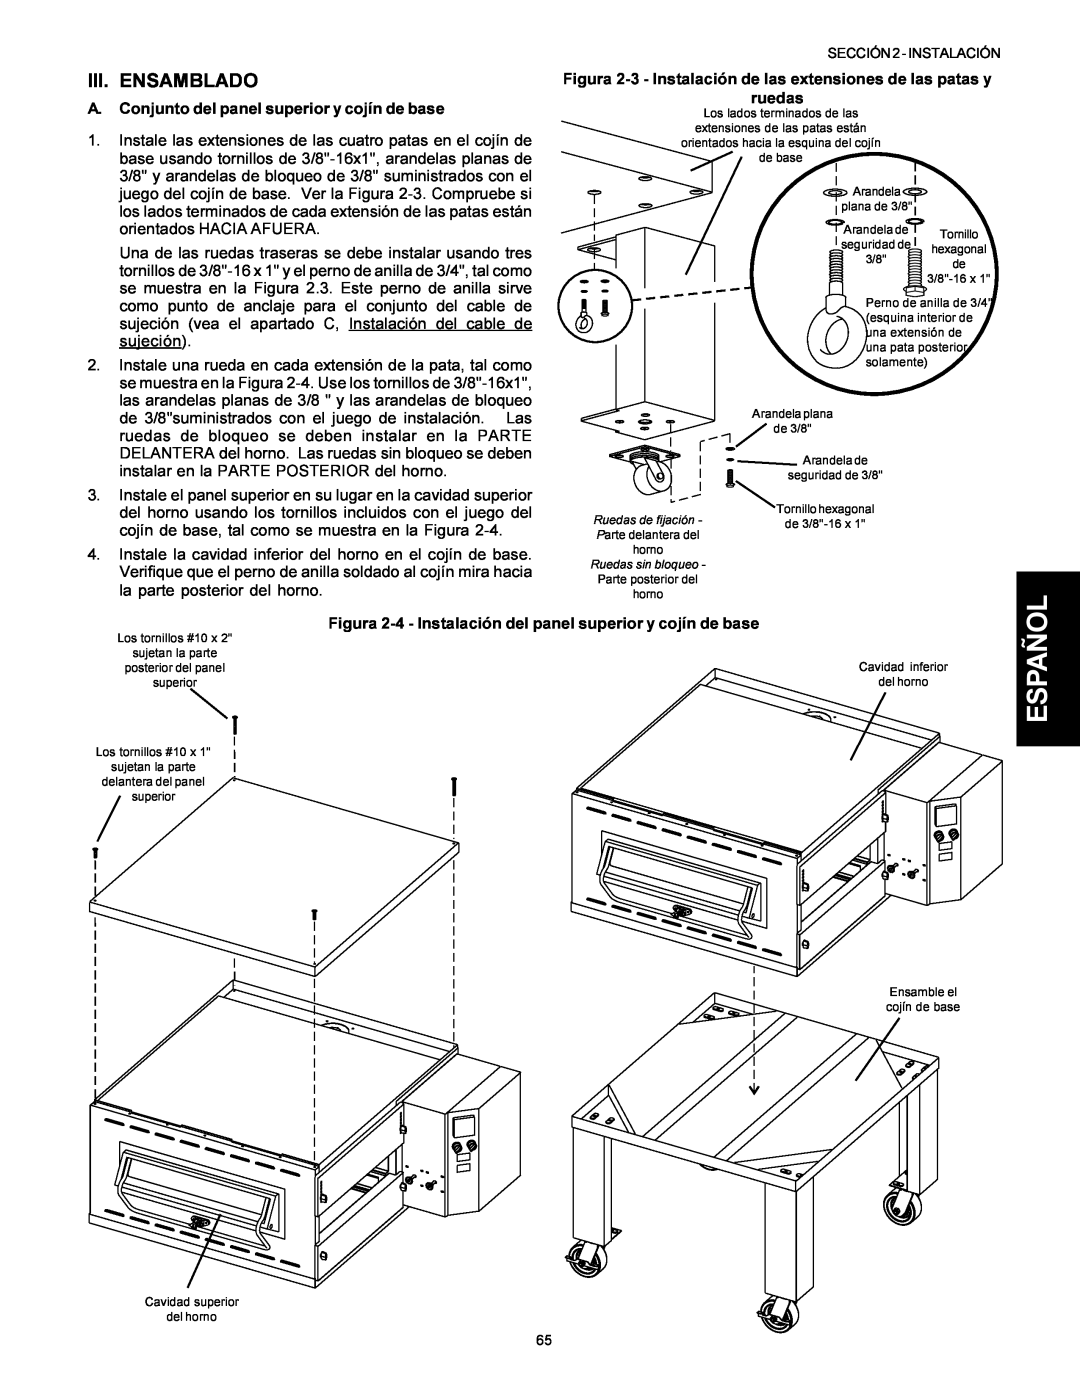 Middleby Marshall Model PS536 installation manual Español, Iii. Ensamblado, A. Conjunto del panel superior y cojín de base 